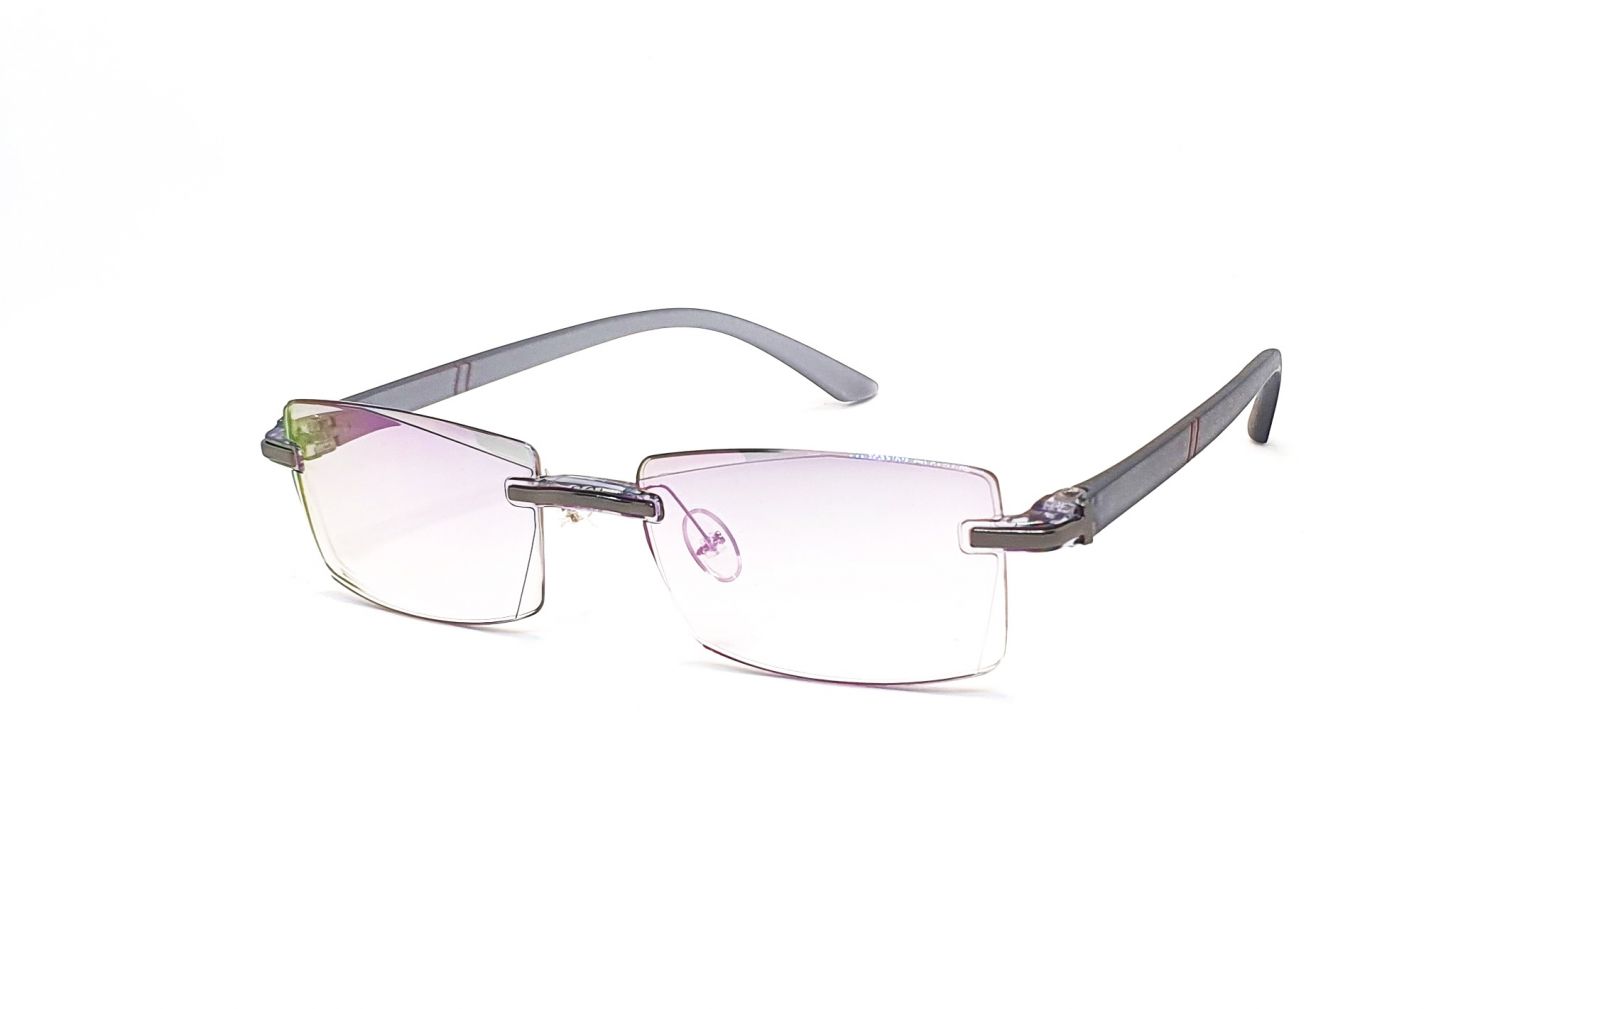 Bezrámečkové dioptrické brýle 346 / -1,00 s antireflexní vrstvou